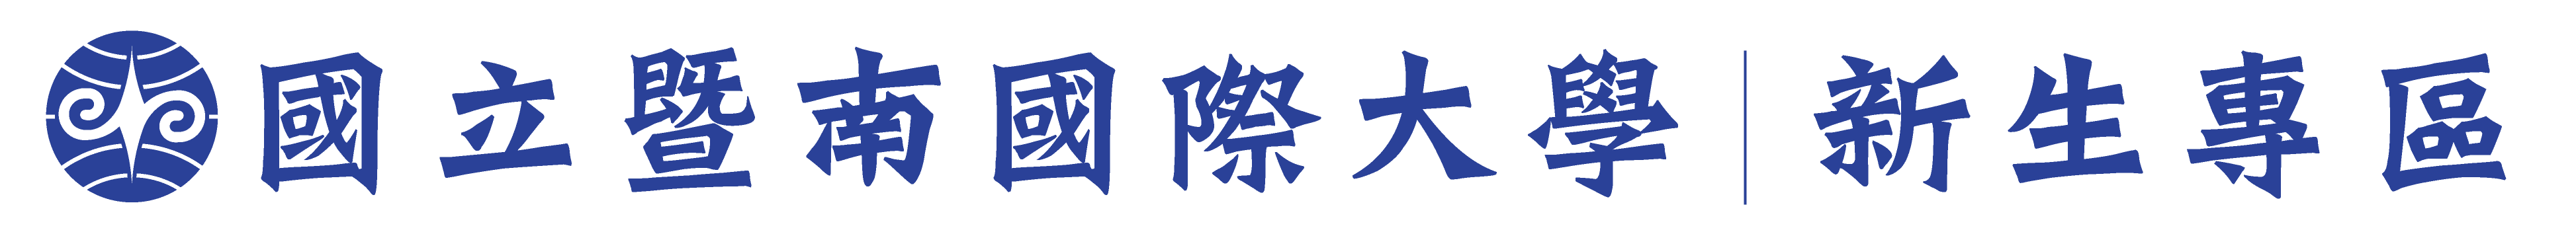 暨南大學 新生專區logo